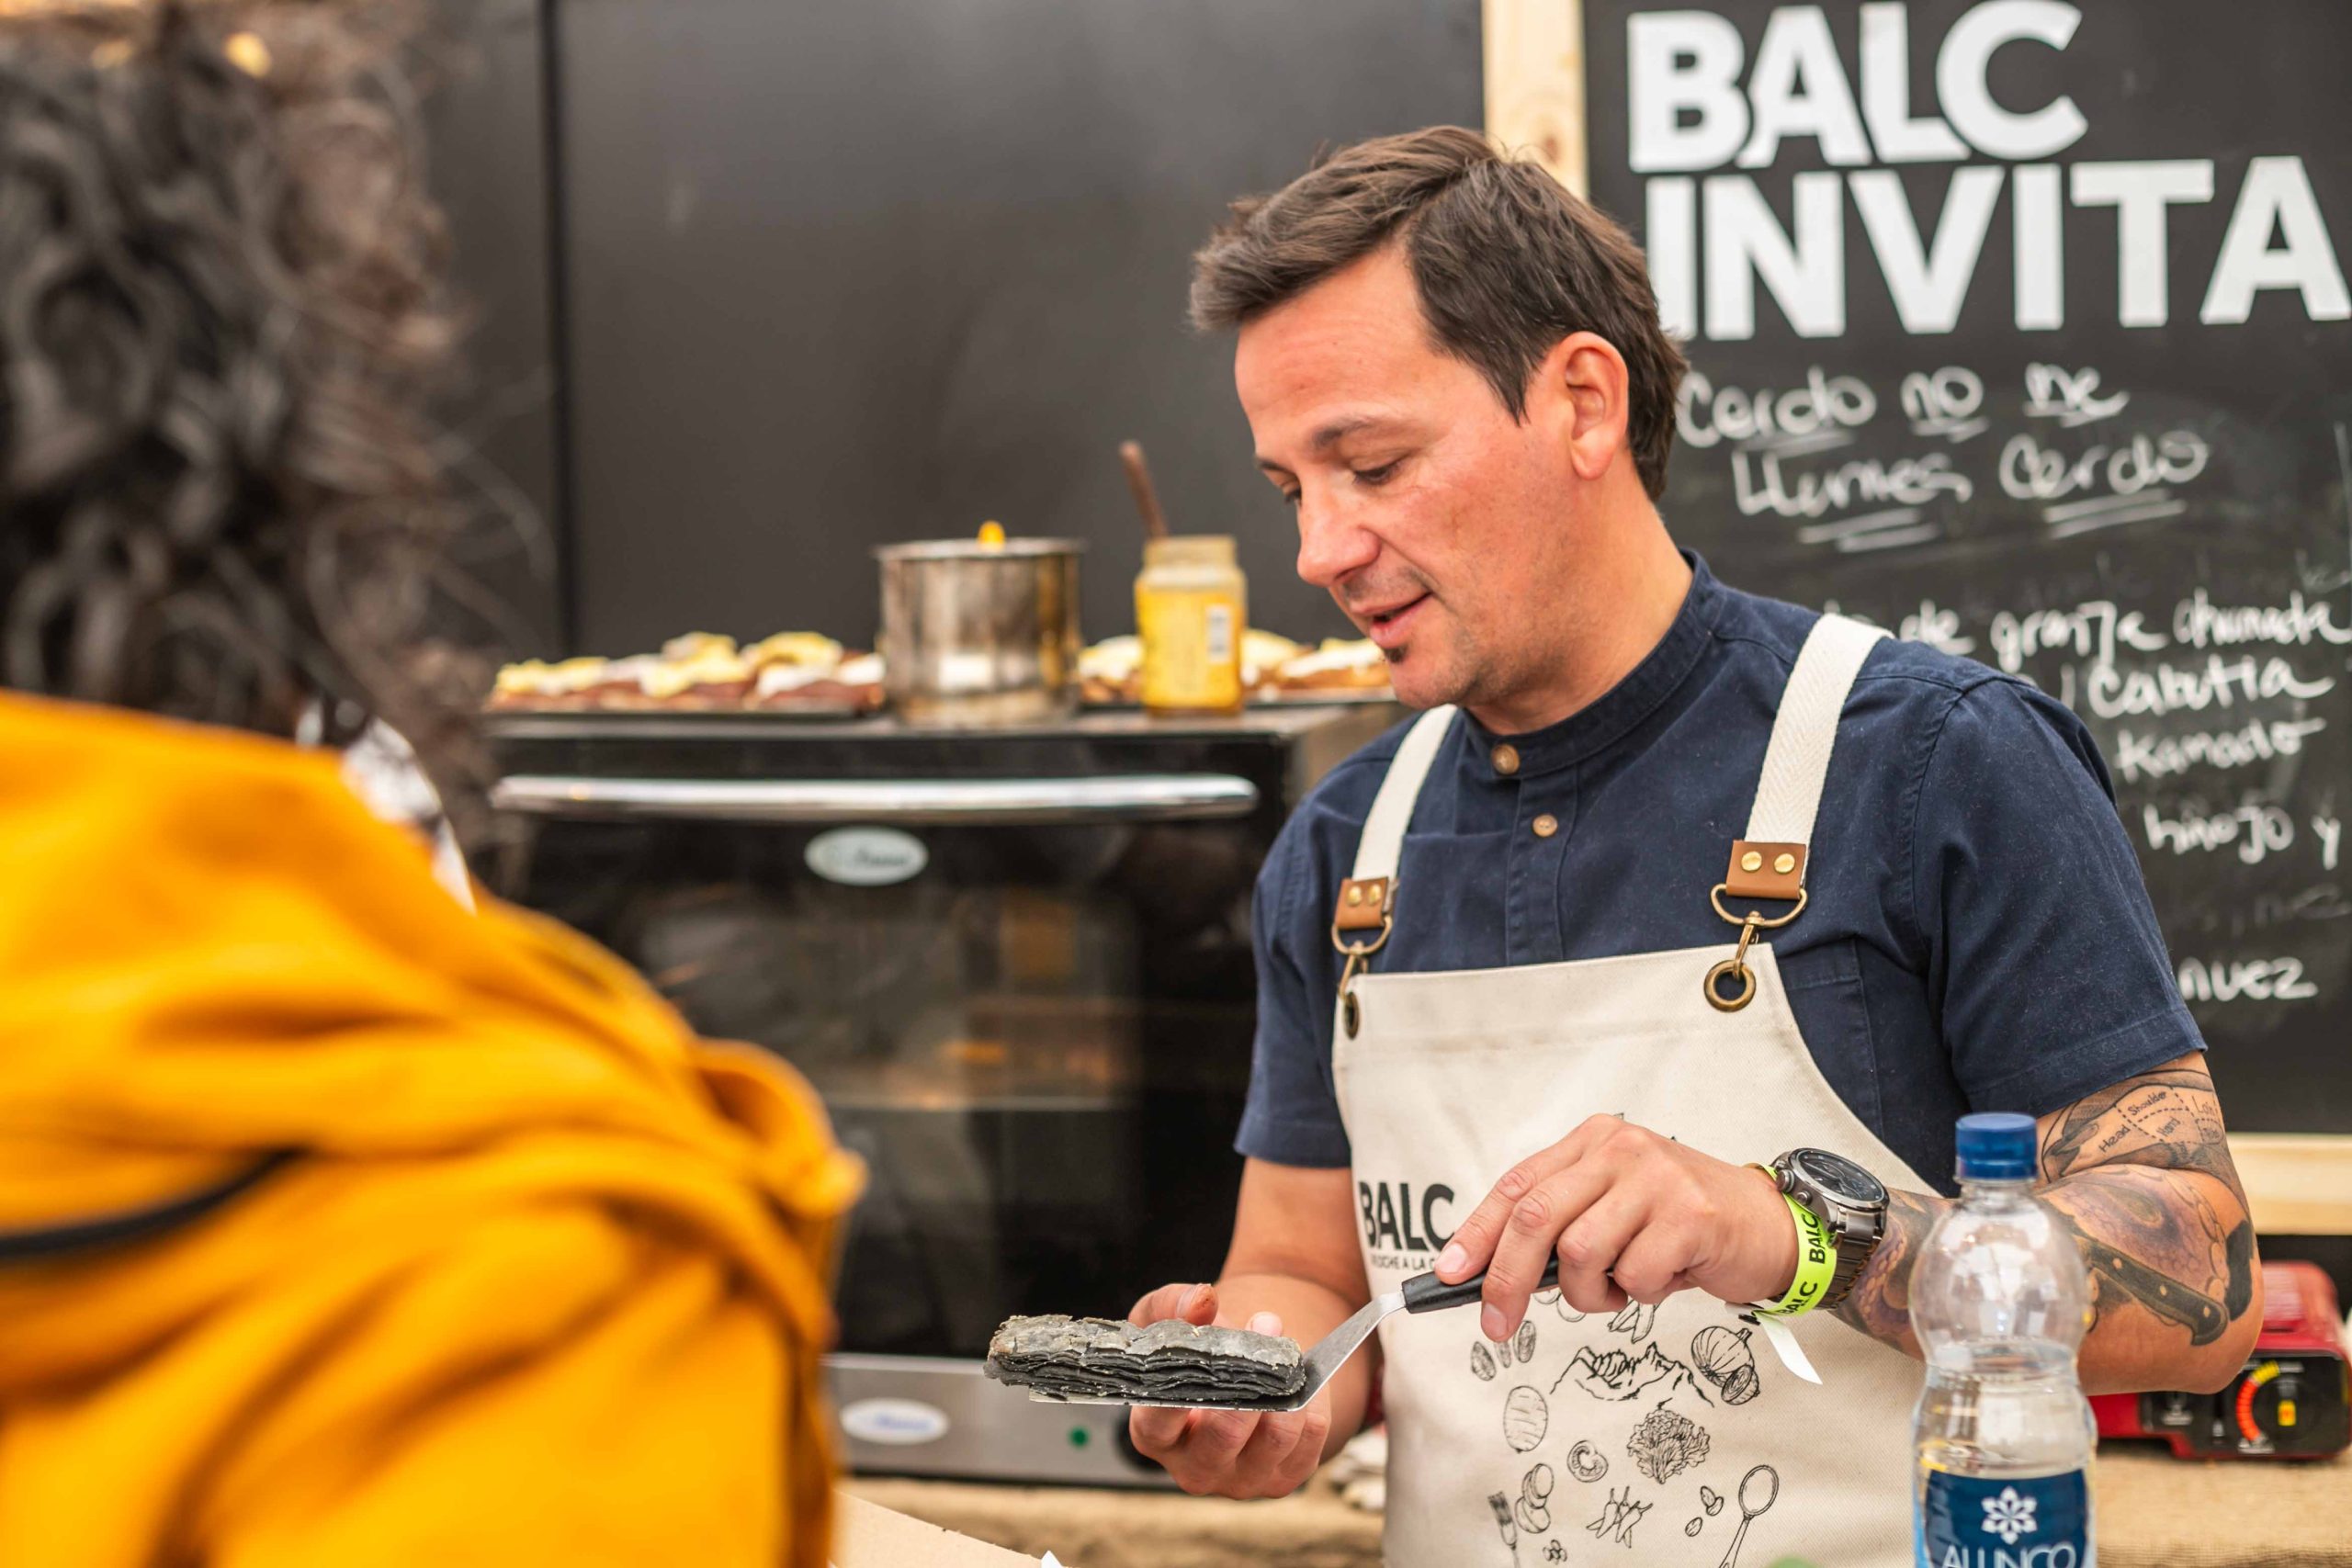 BALC XL, federal y de excelencia, se despidió luciendo la mejor gastronomía y producción de la región